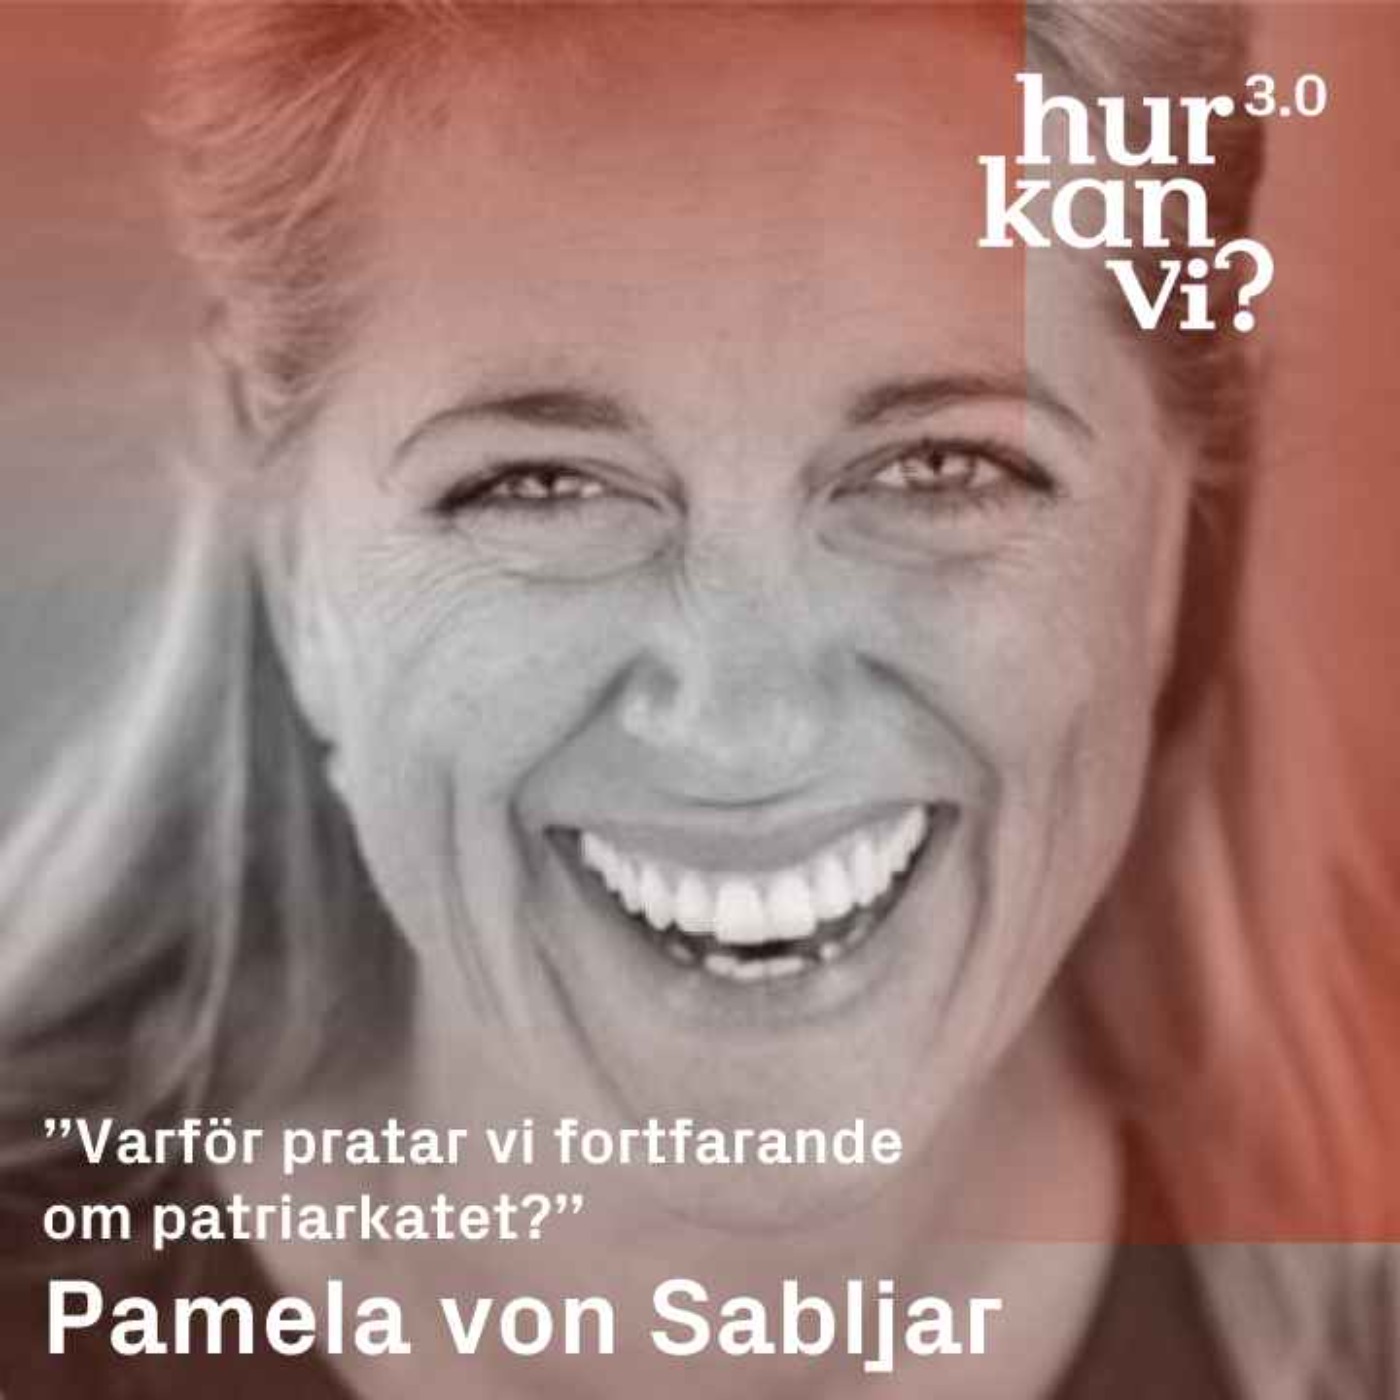 Pamela von Sabljar - ”Varför pratar vi fortfarande om patriarkatet?”